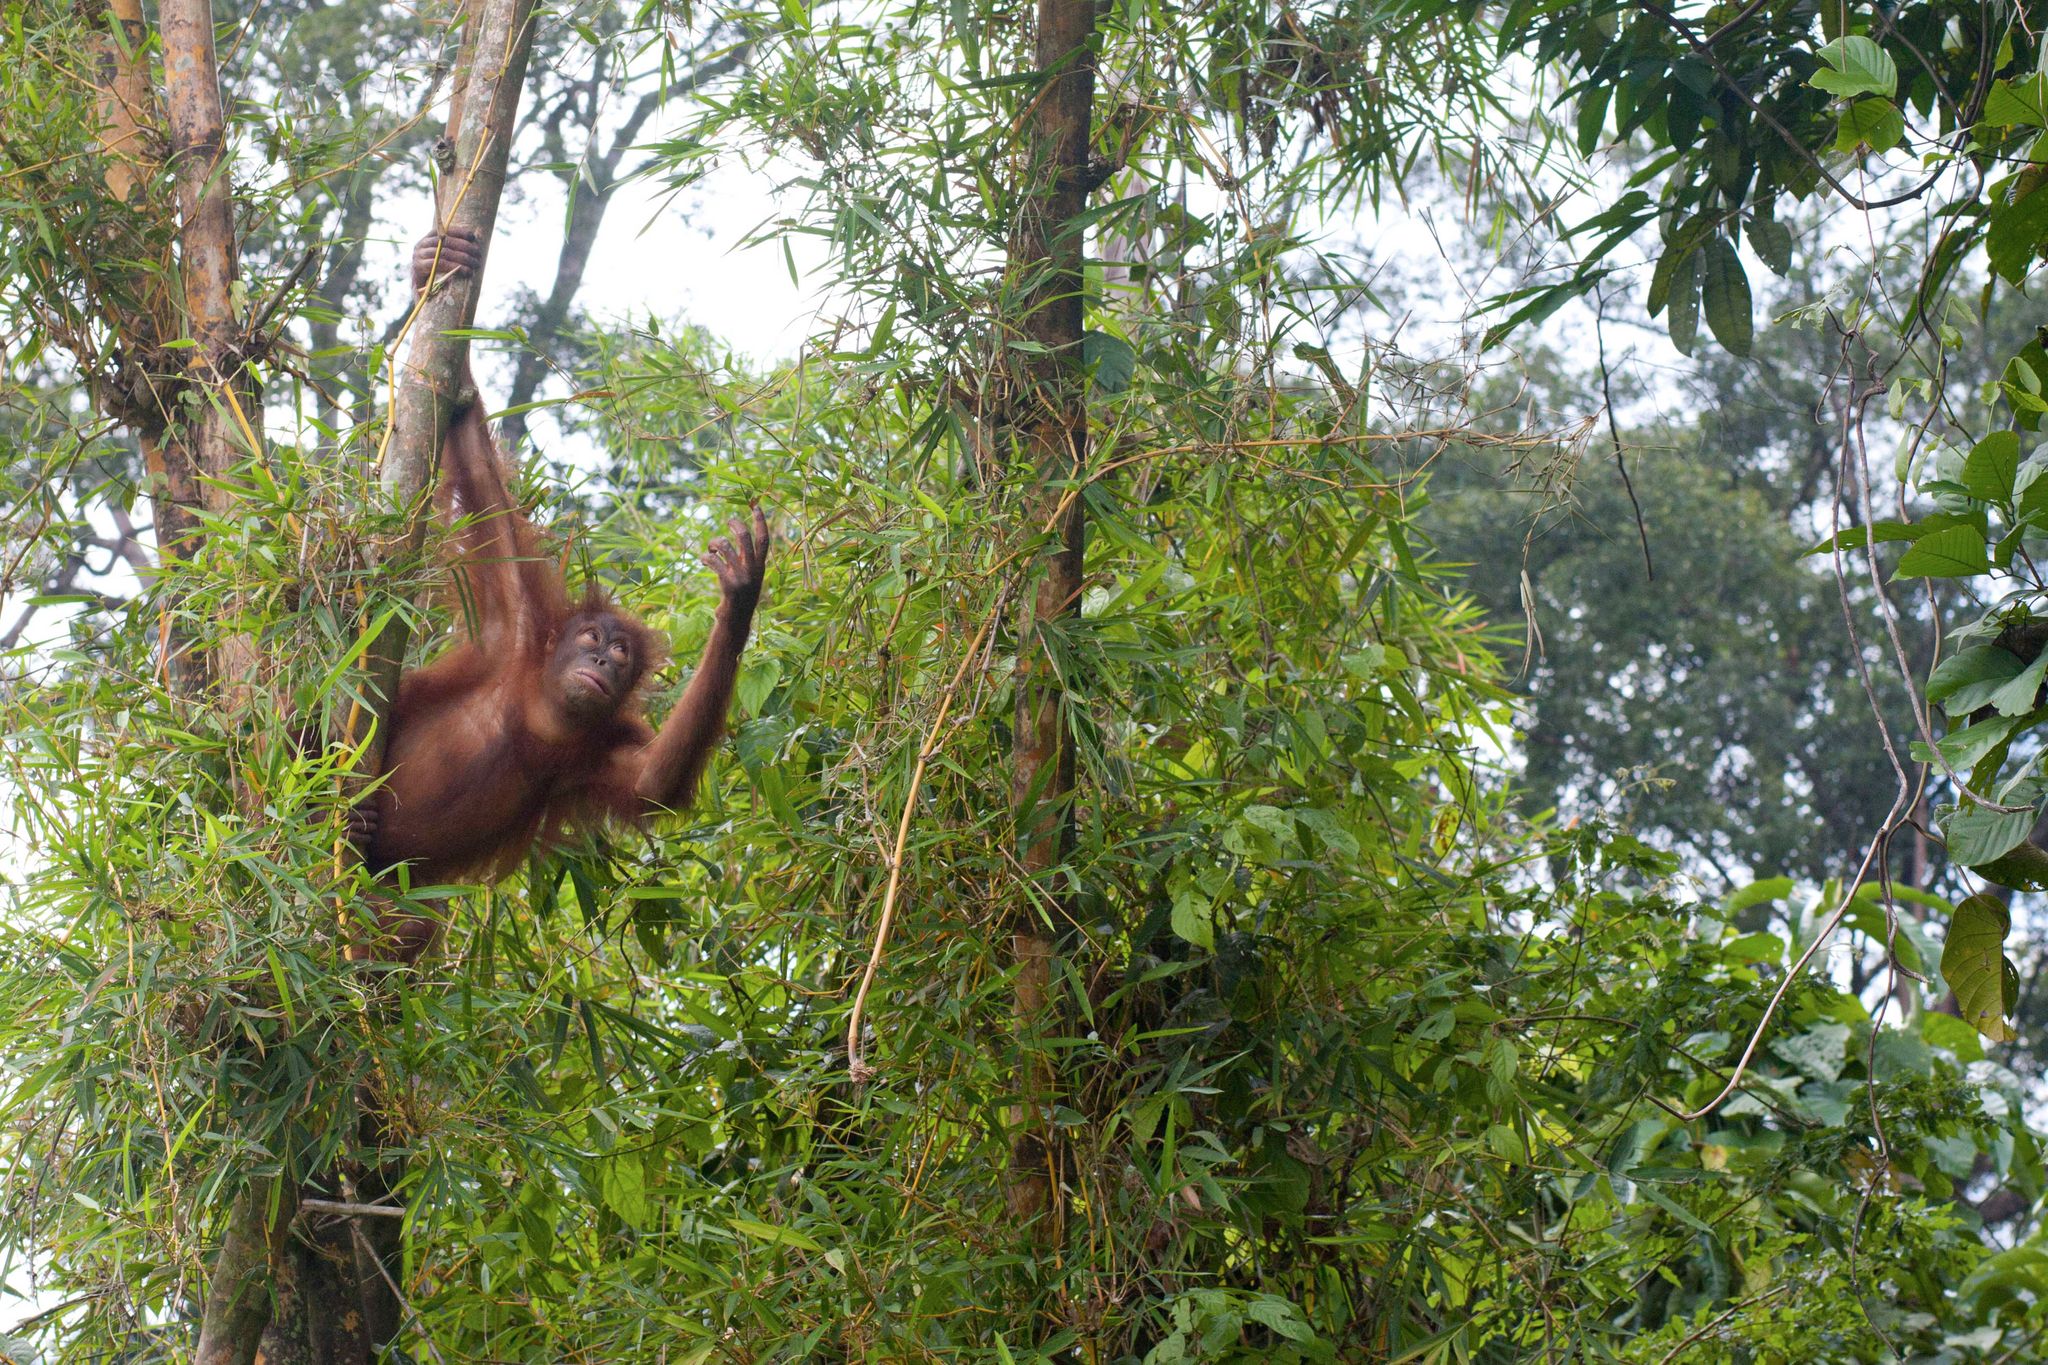 La estrategia comunicativa y la capacidad de respuesta social de los orangutanes varía entre individuos y, al mismo tiempo, también son flexibles (foto: picture alliance / John Grafilo/dpa)